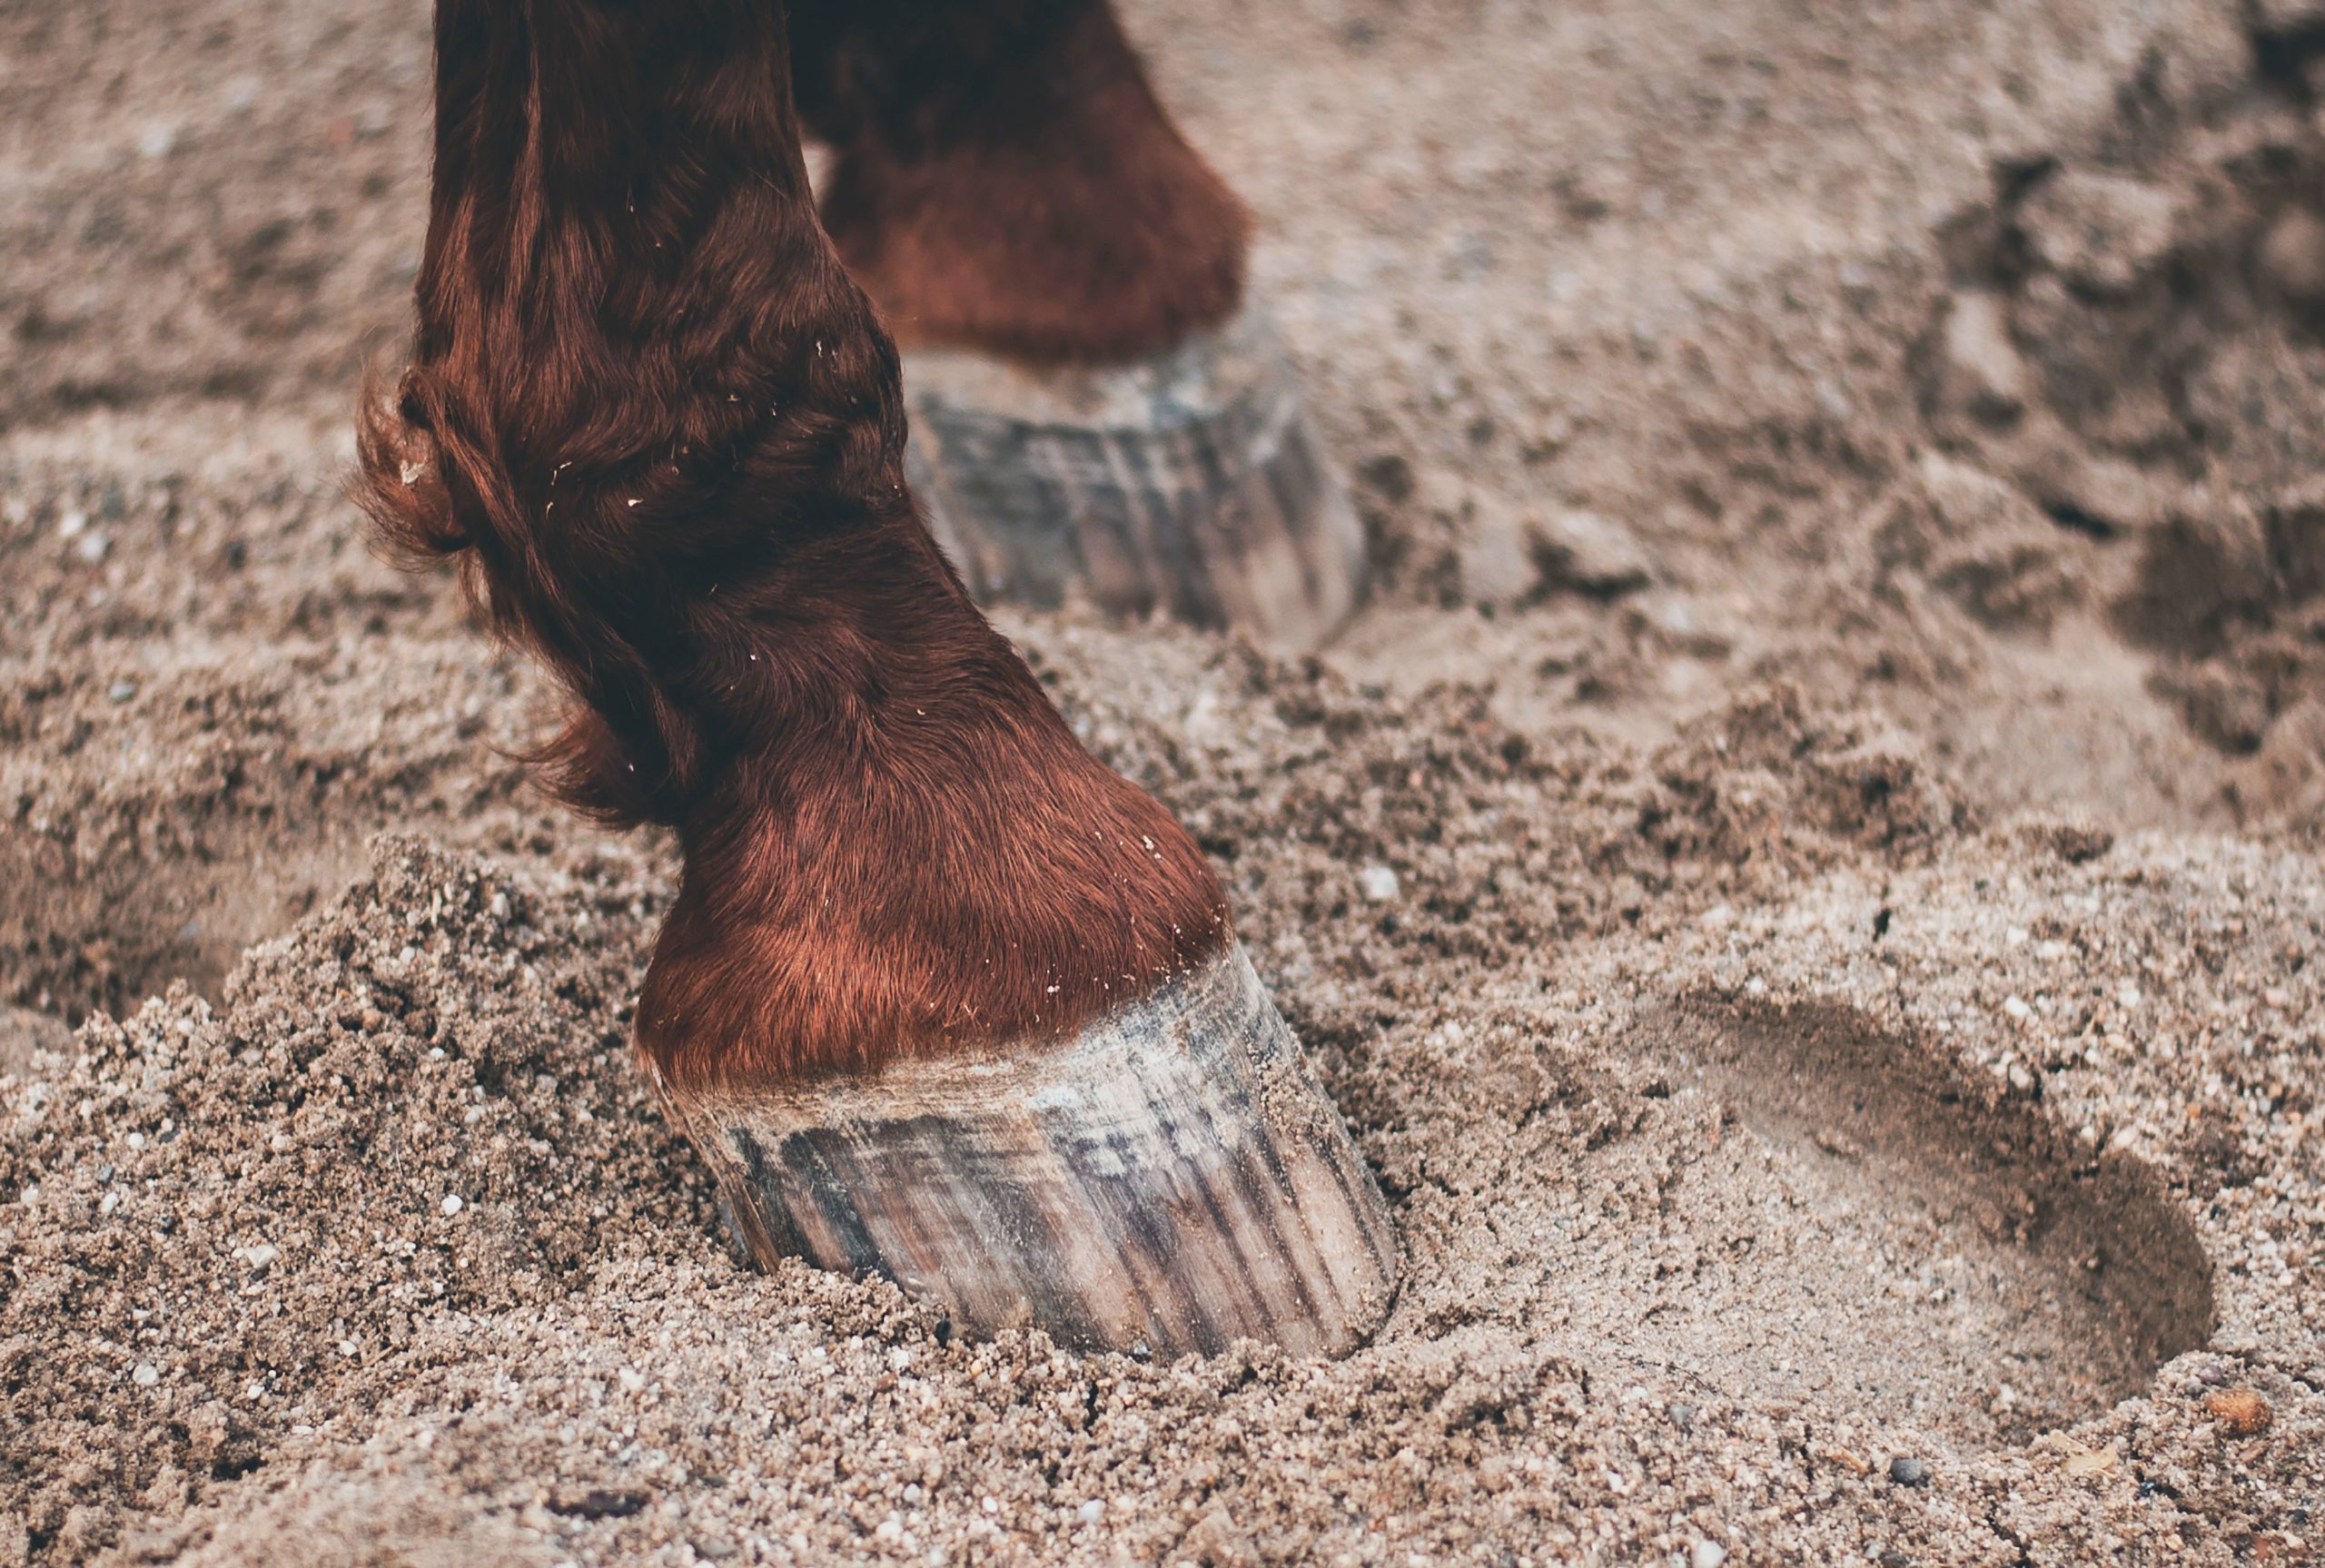 Why do horses need horseshoes?